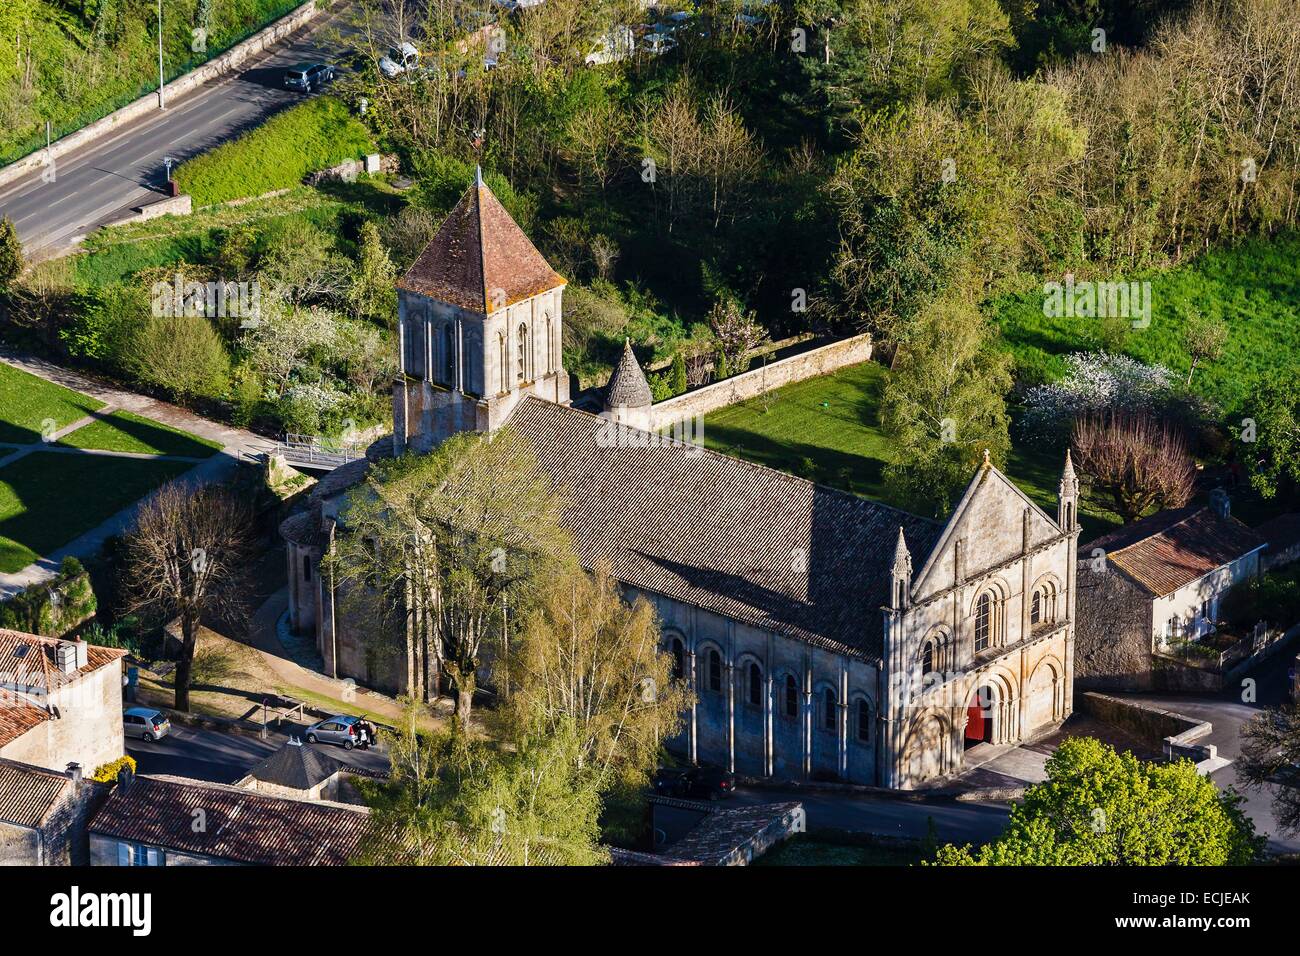 France, Deux Sevres, Melle, Saint Hilaire church (aerial view) Stock Photo